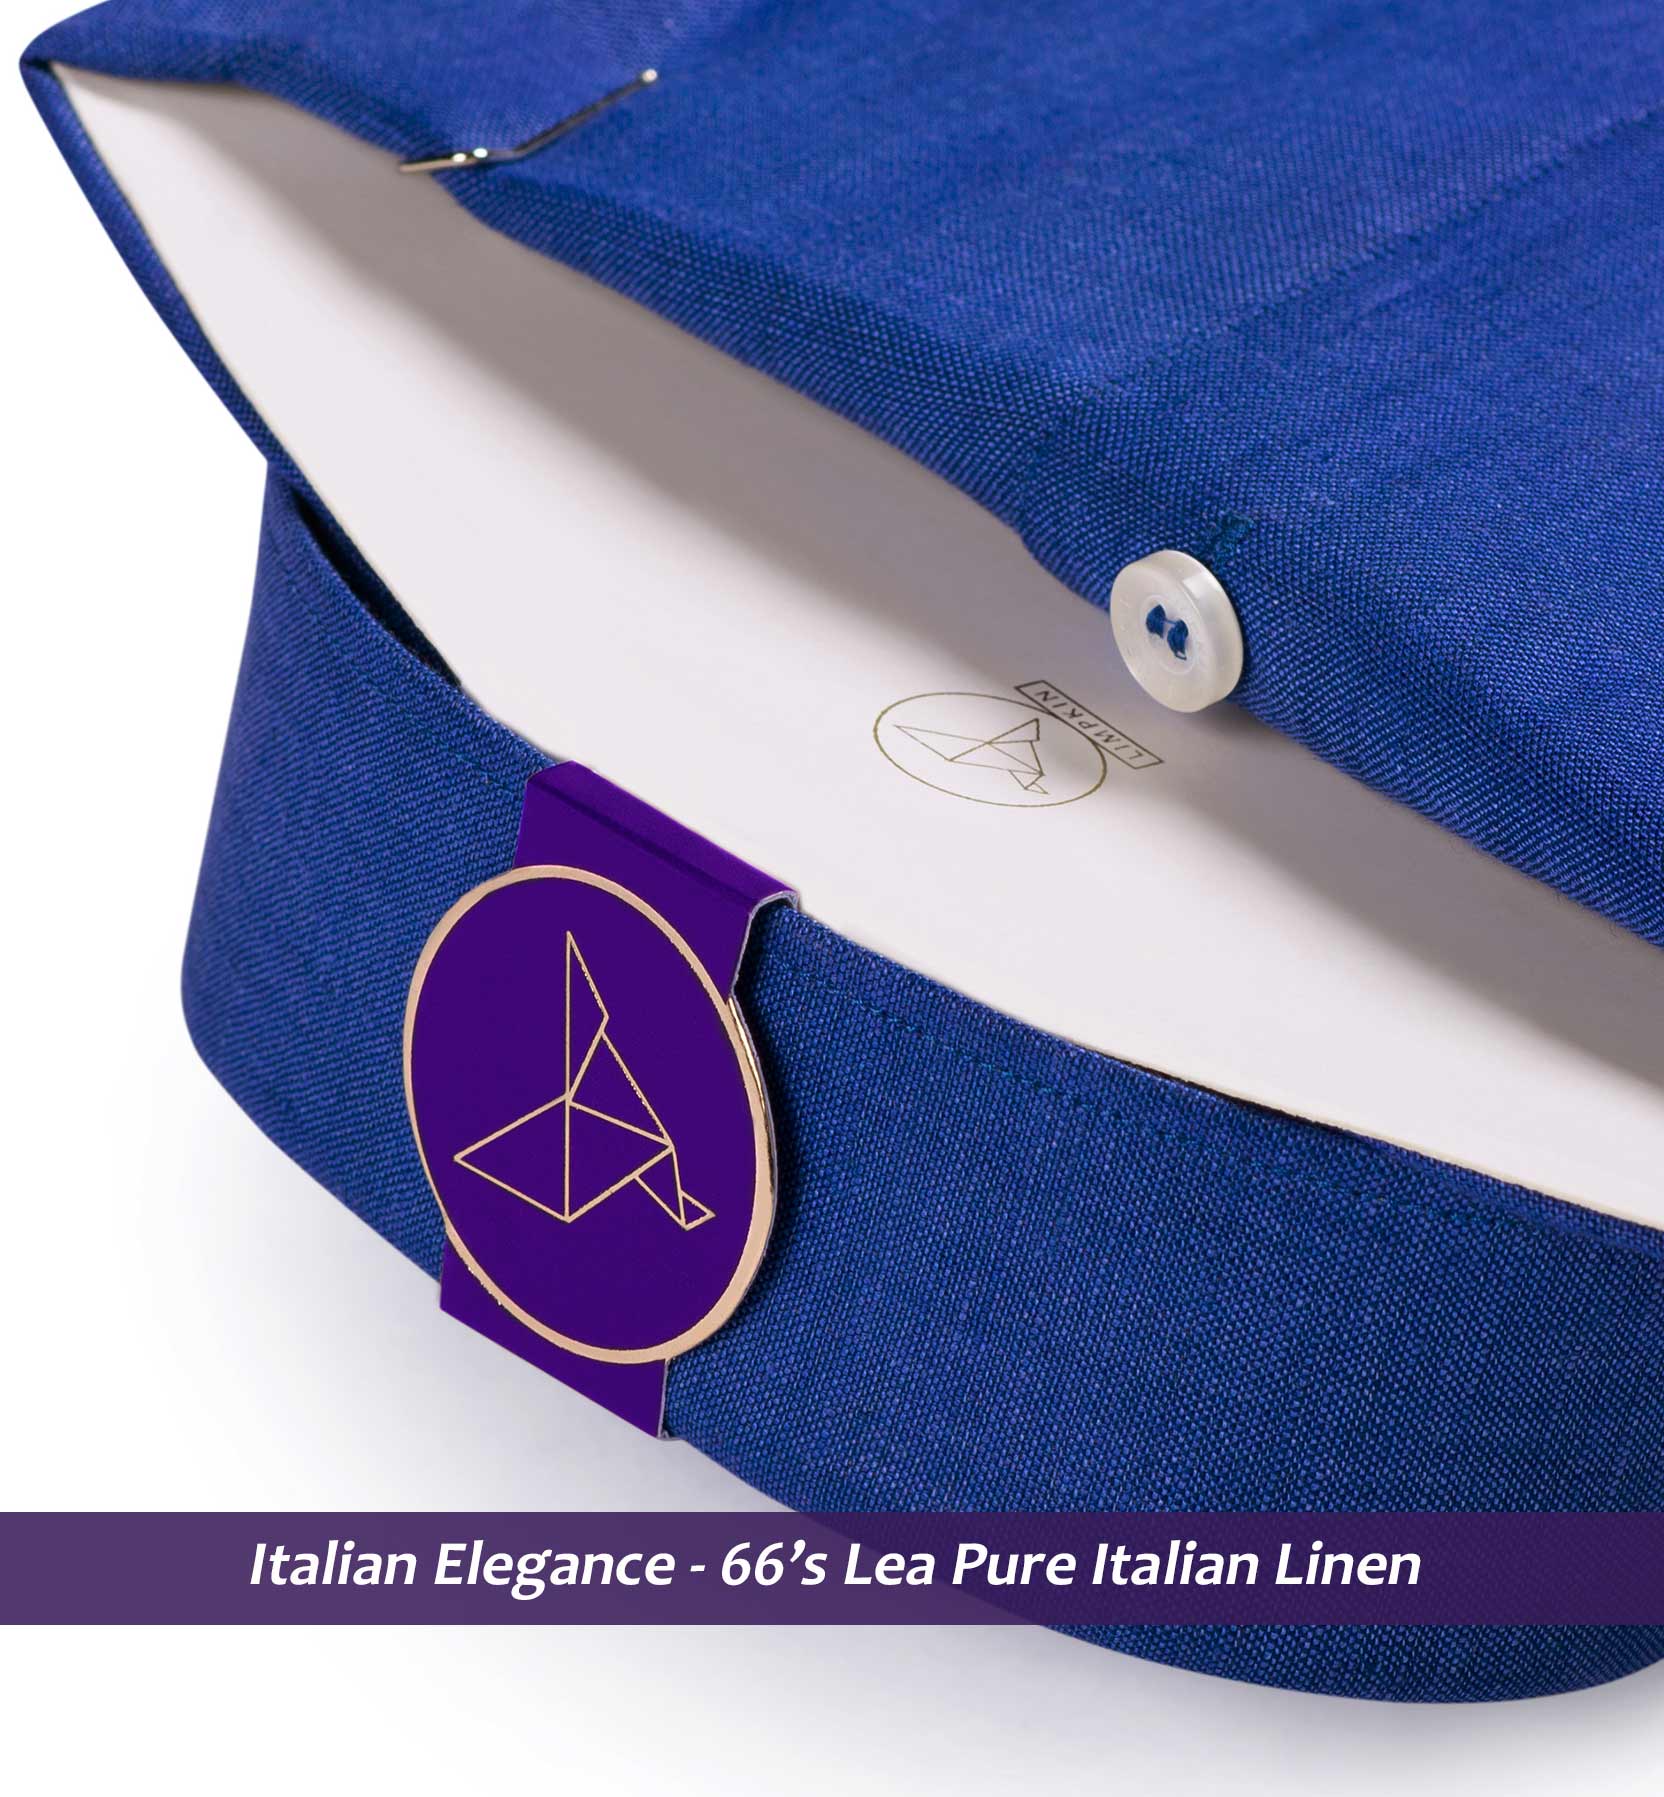 Adelaide- Royal Blue Solid Linen- 66's Lea Pure Italian Linen